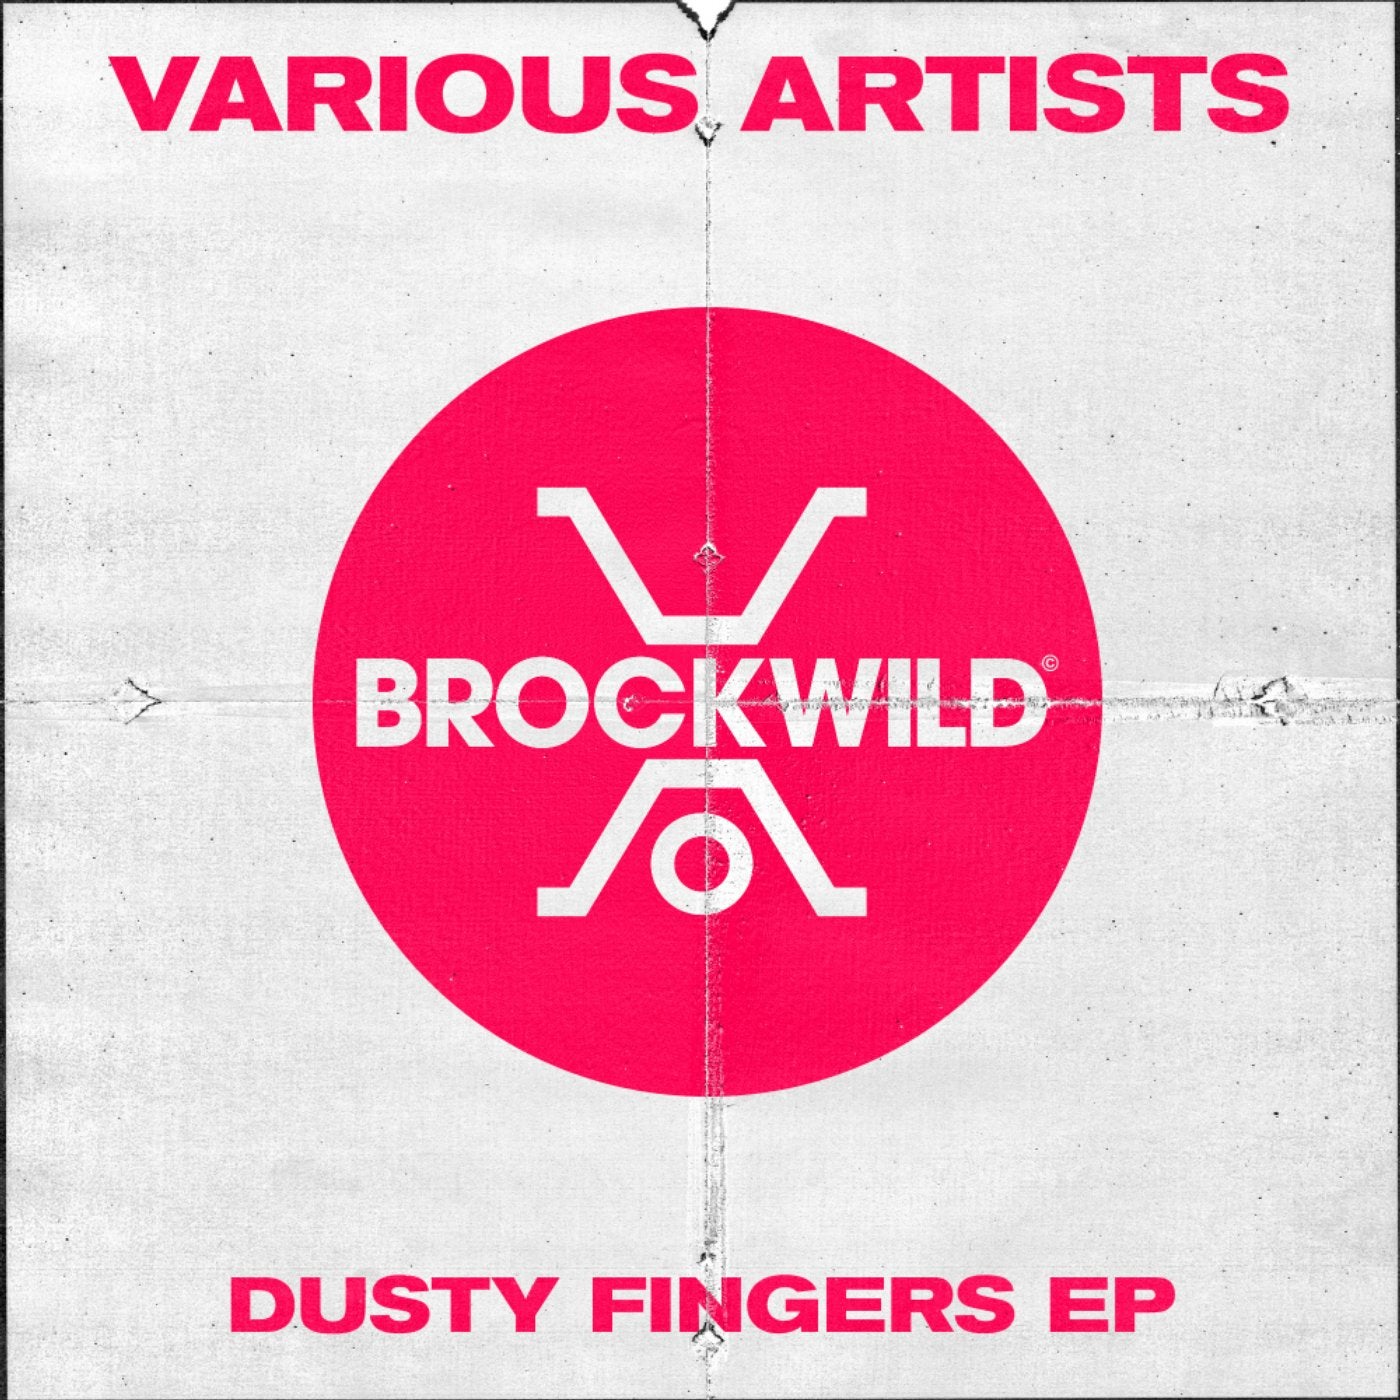 Dusty Fingers EP